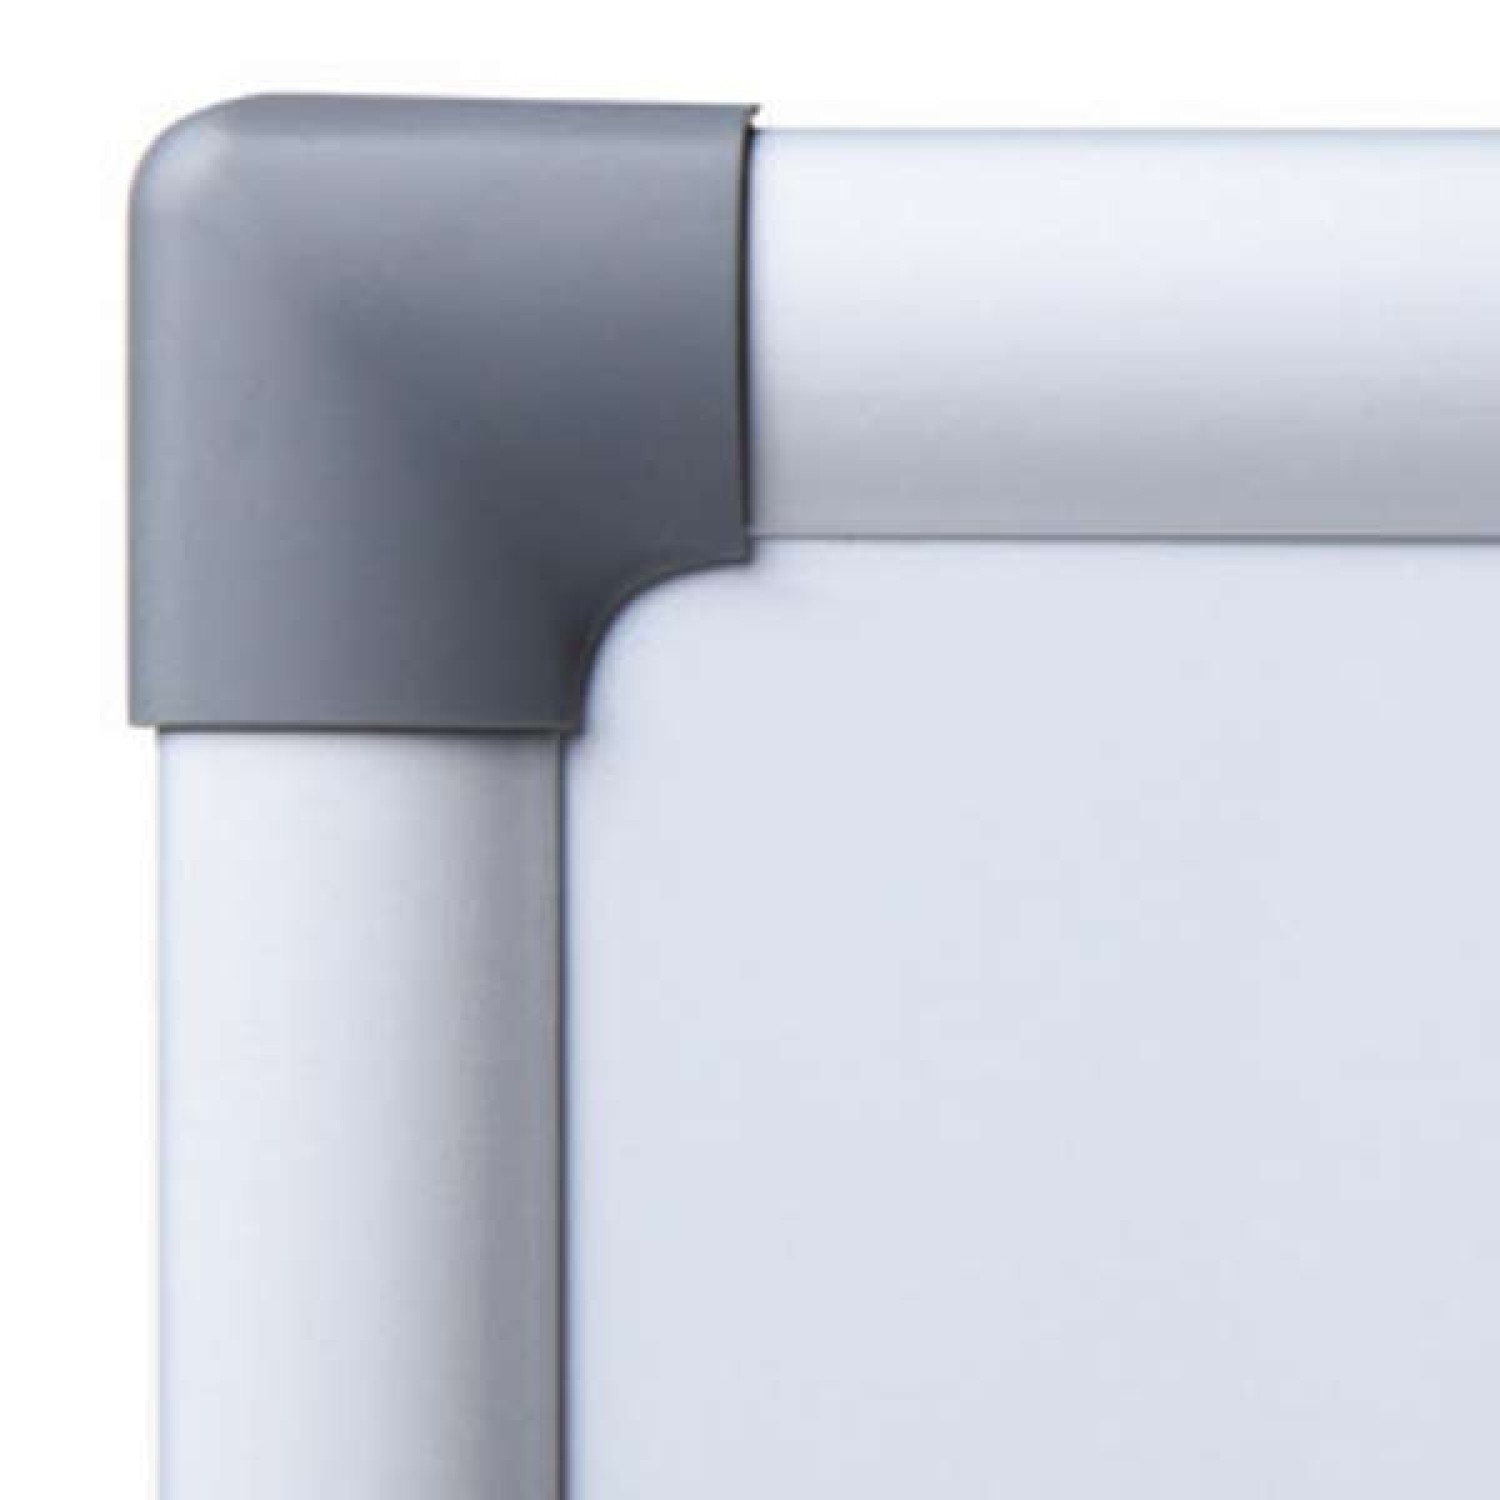 2. Foto Whiteboard mit schutzlackierter Stahloberfläche magnethaftend beschreibbar mit Stiftablage (Größe: 90 x 60 cm)